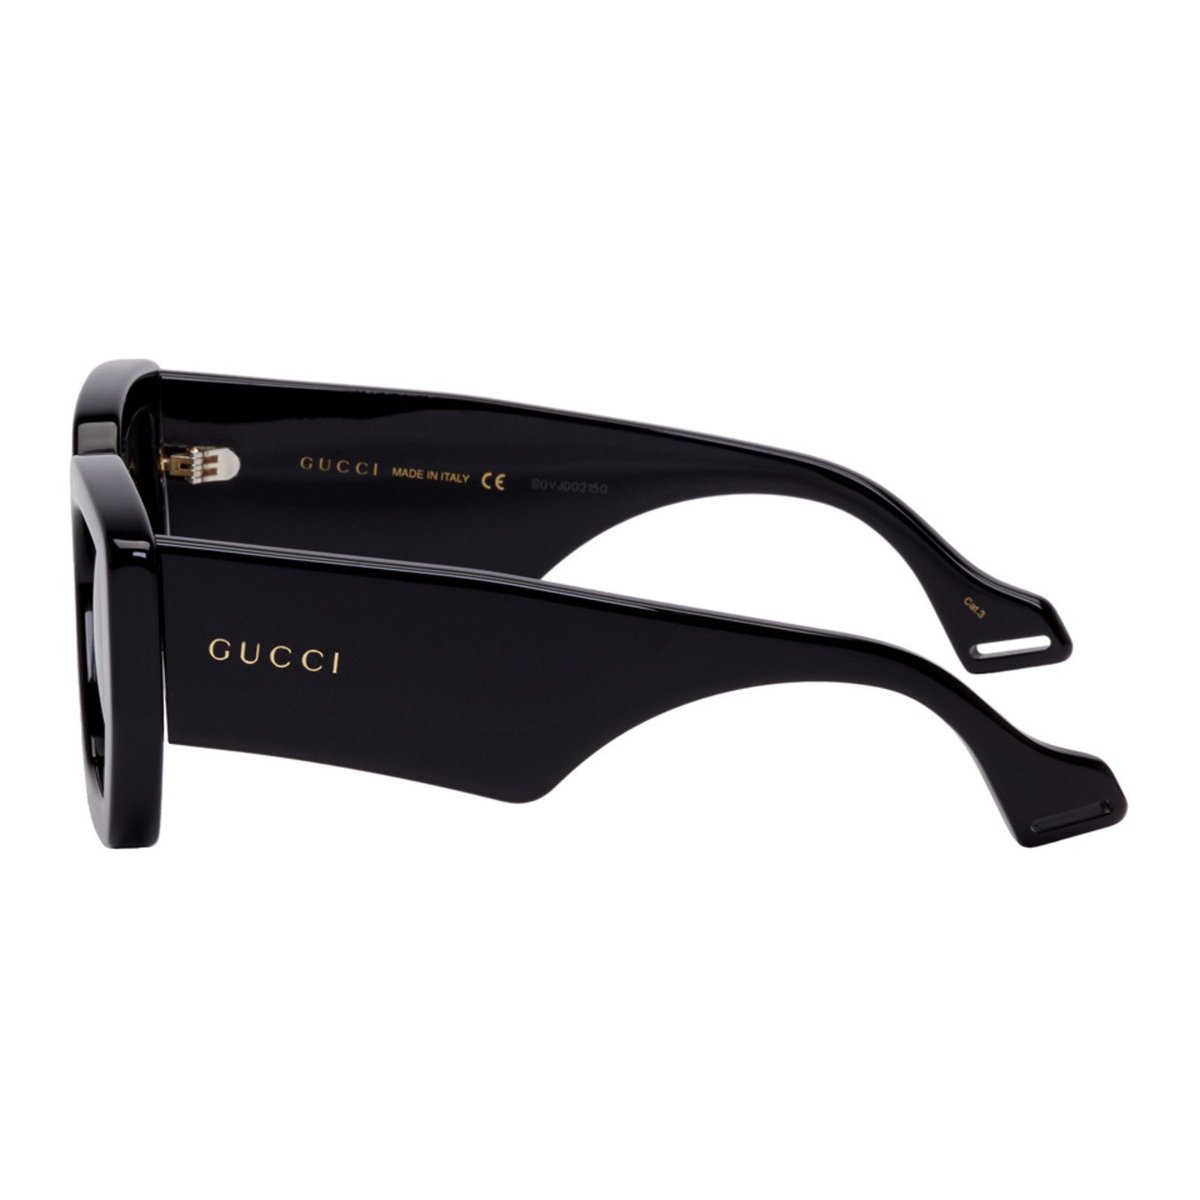 Gucci black square sunglasses 